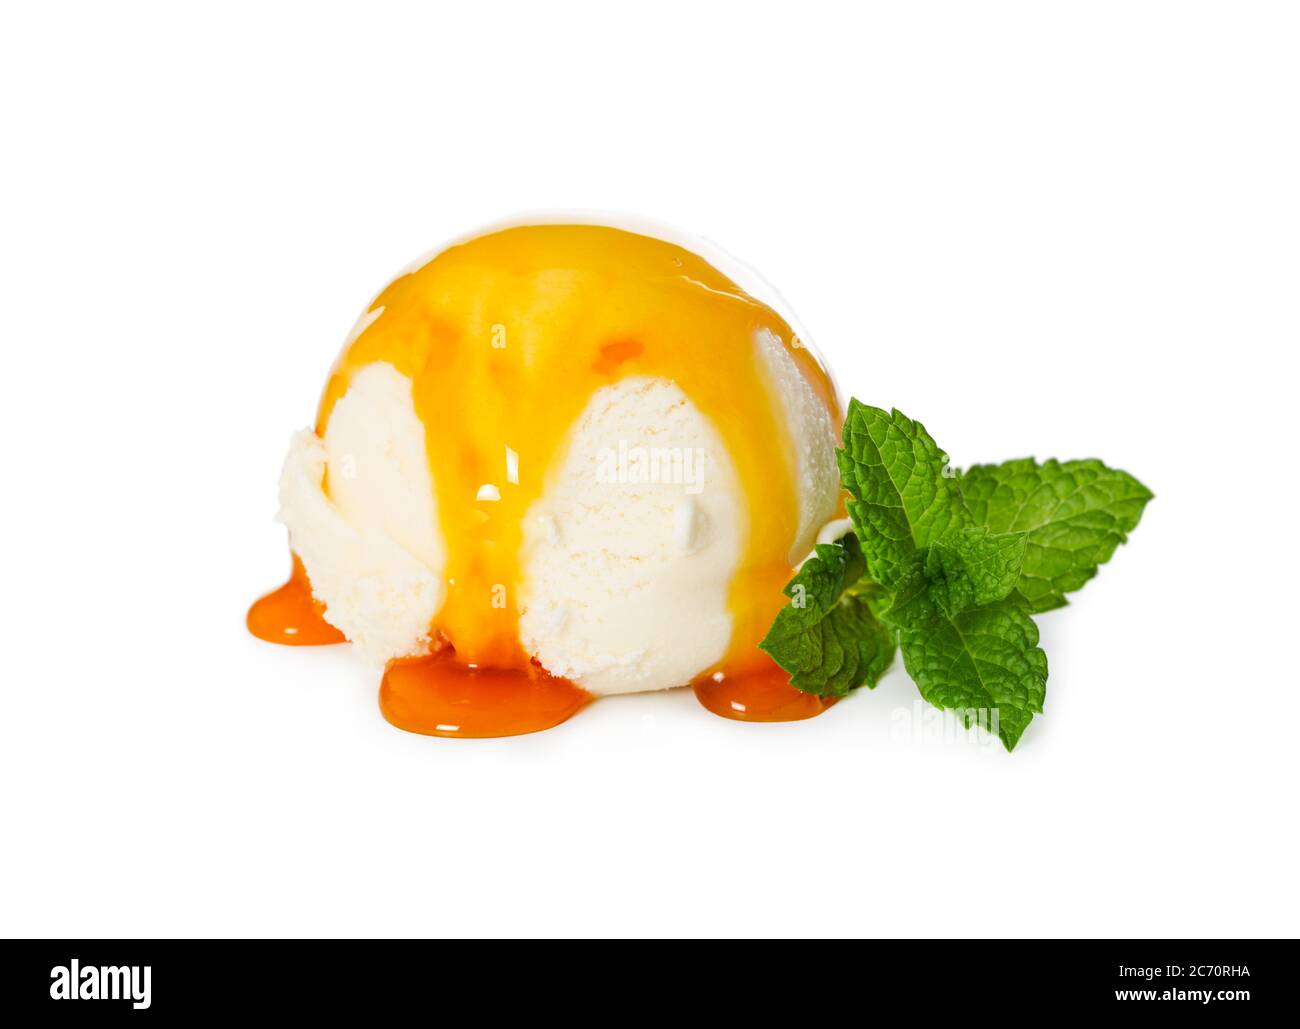 Palla gelato alla vaniglia con sciroppo di caramello e menta fresca isolata su sfondo bianco. Foto Stock